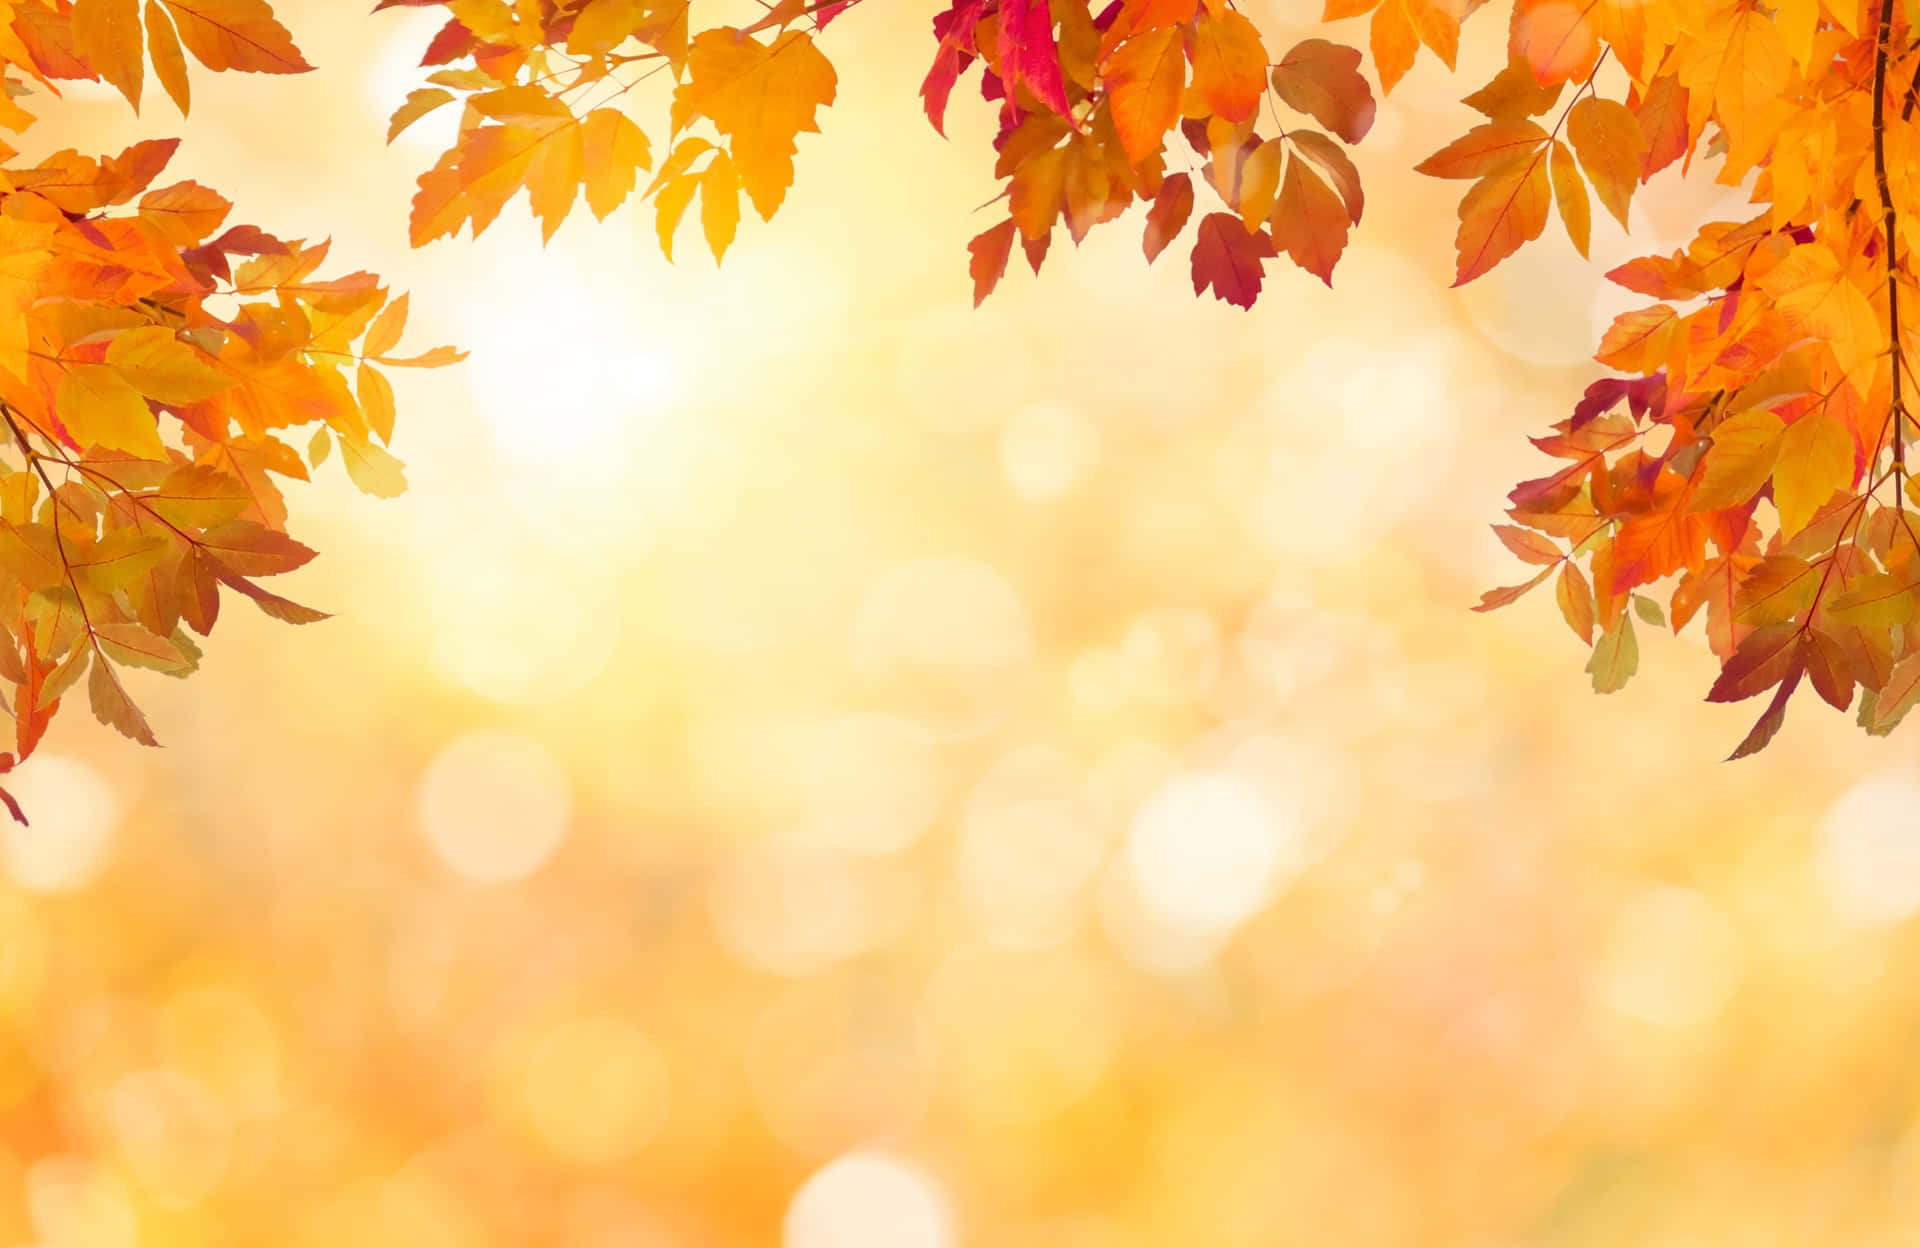 Holensie Sich Das Beste Des Herbstes Mit Diesem Wunderschönen Hintergrund.